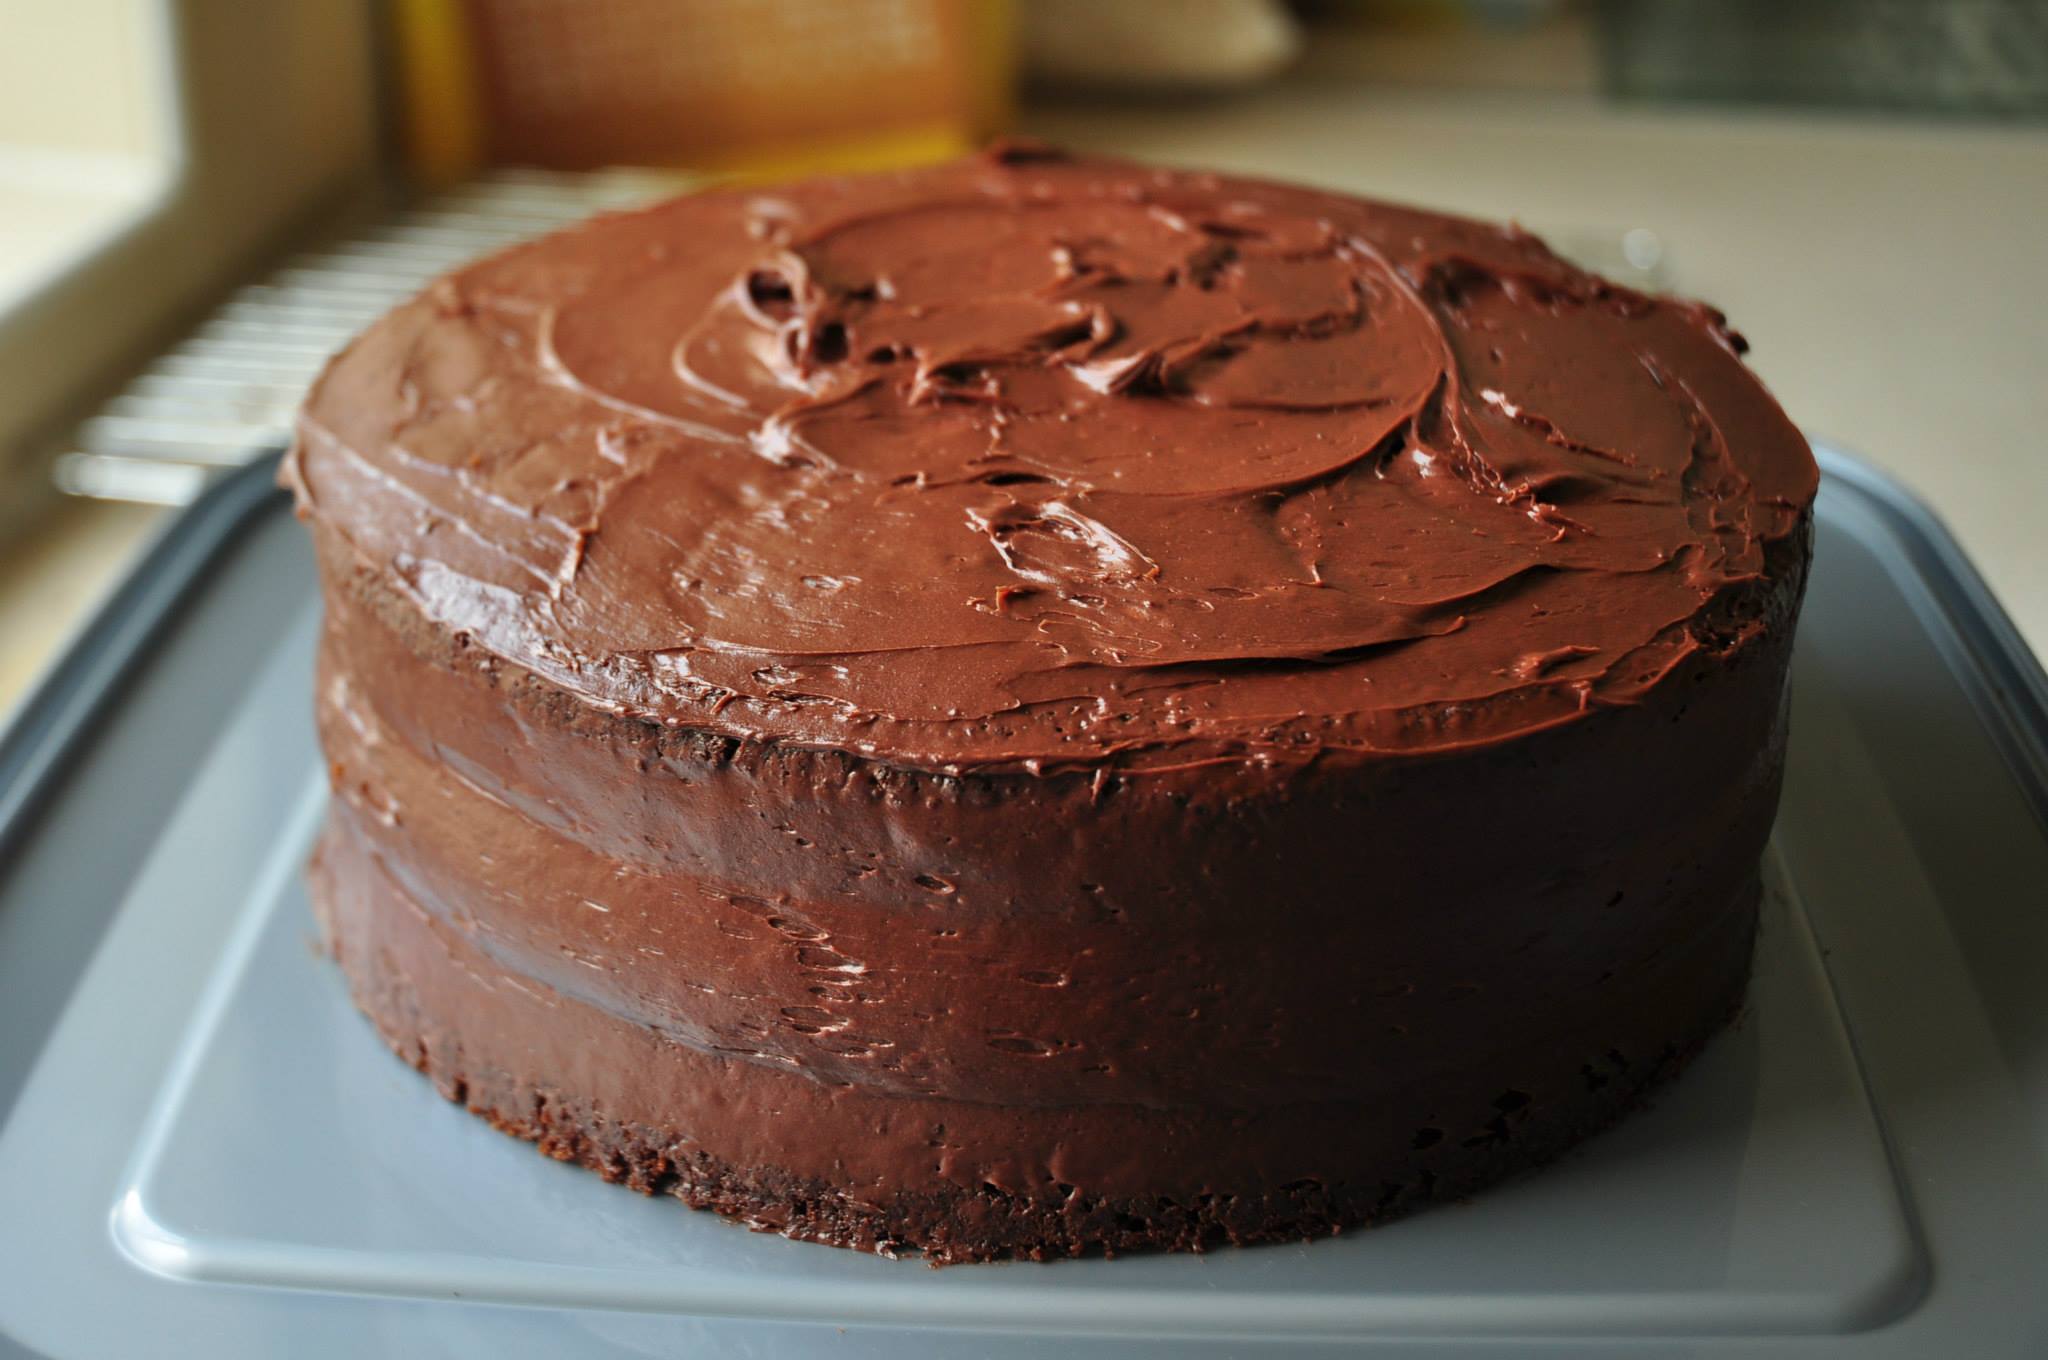 Un gâteau au chocolat fait maison | Source : Flickr.com/eventcoverage